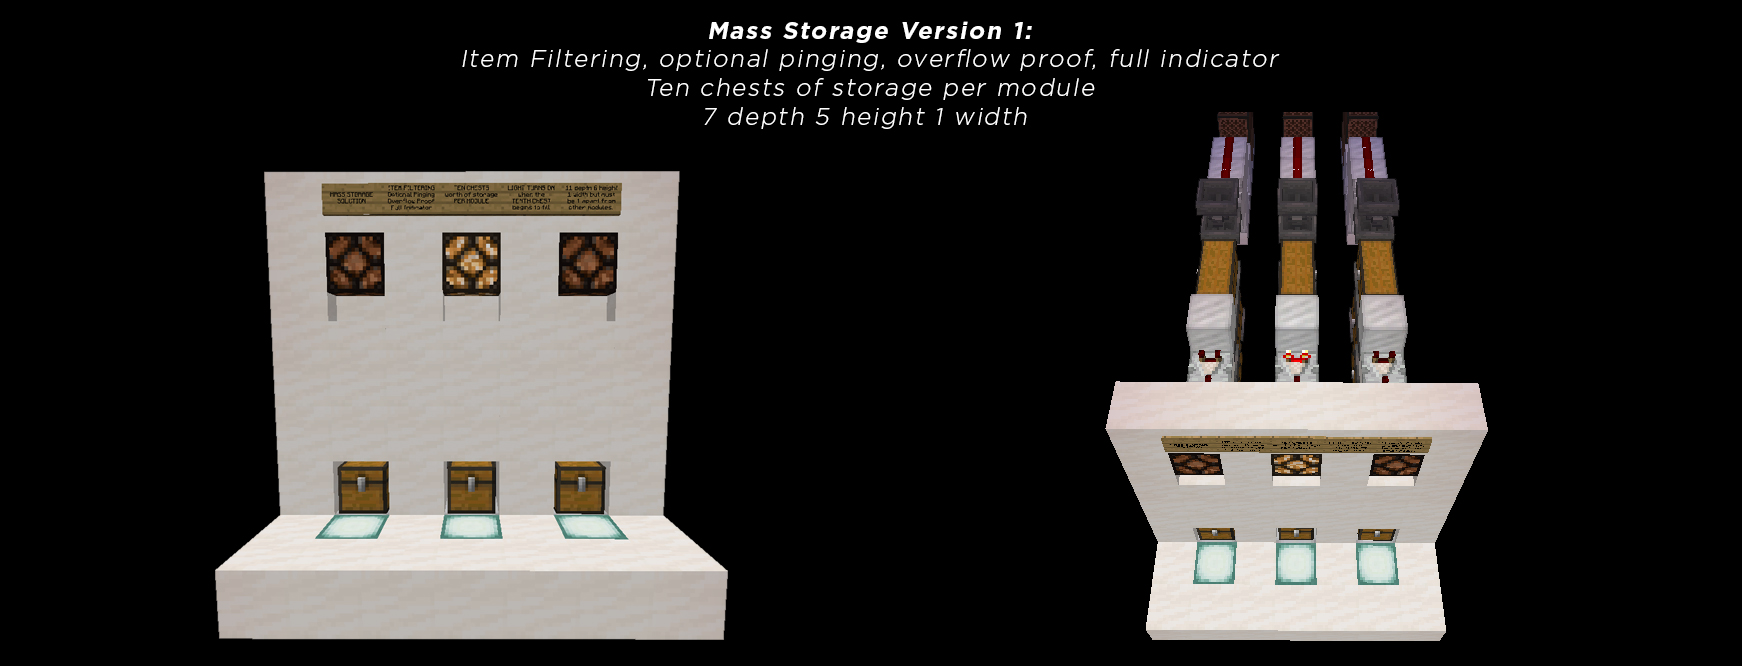 TEN Chest Storage 3 Modules.jpg